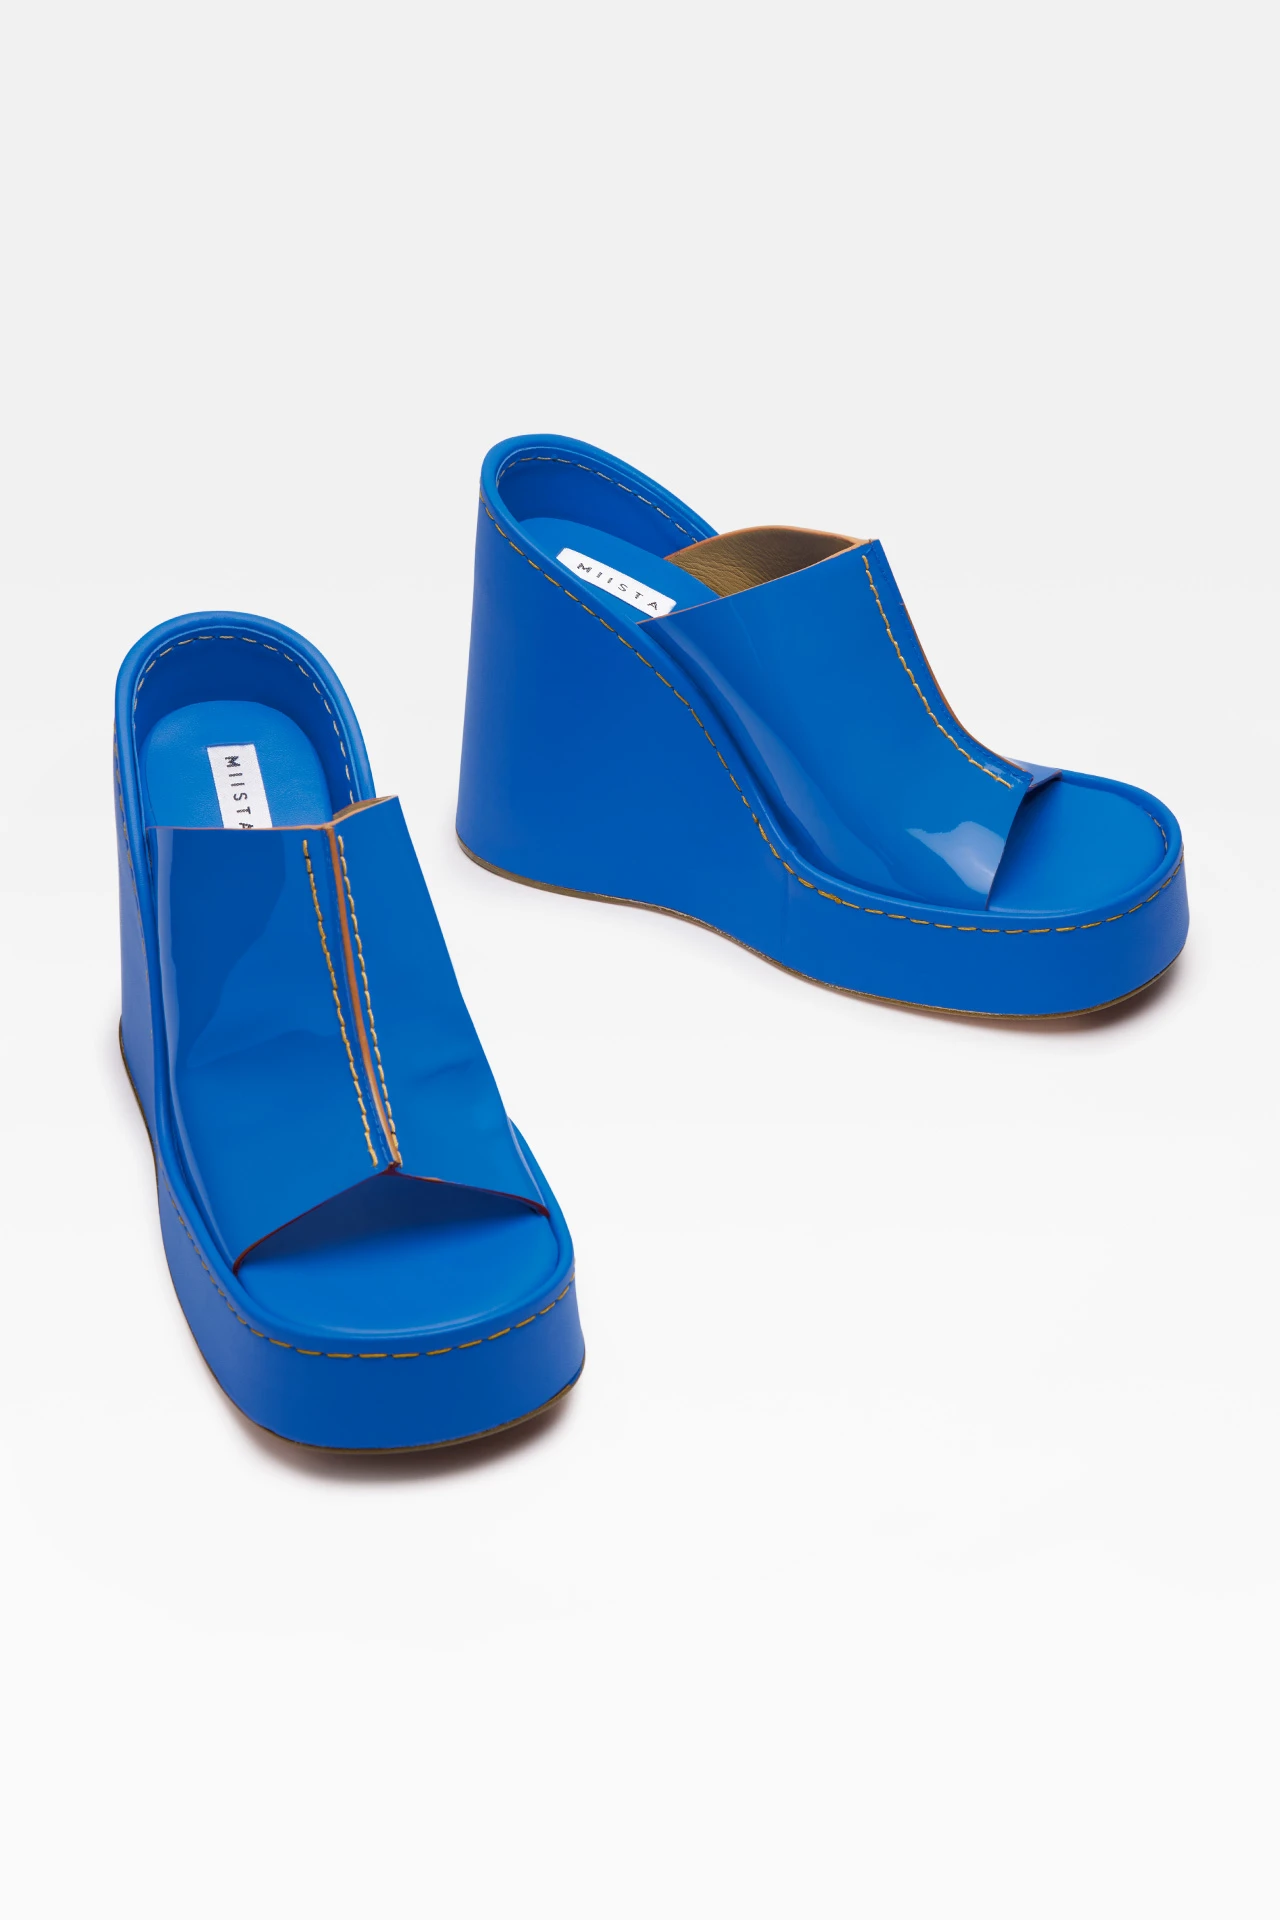 miista-rhea-blue-sandals-2